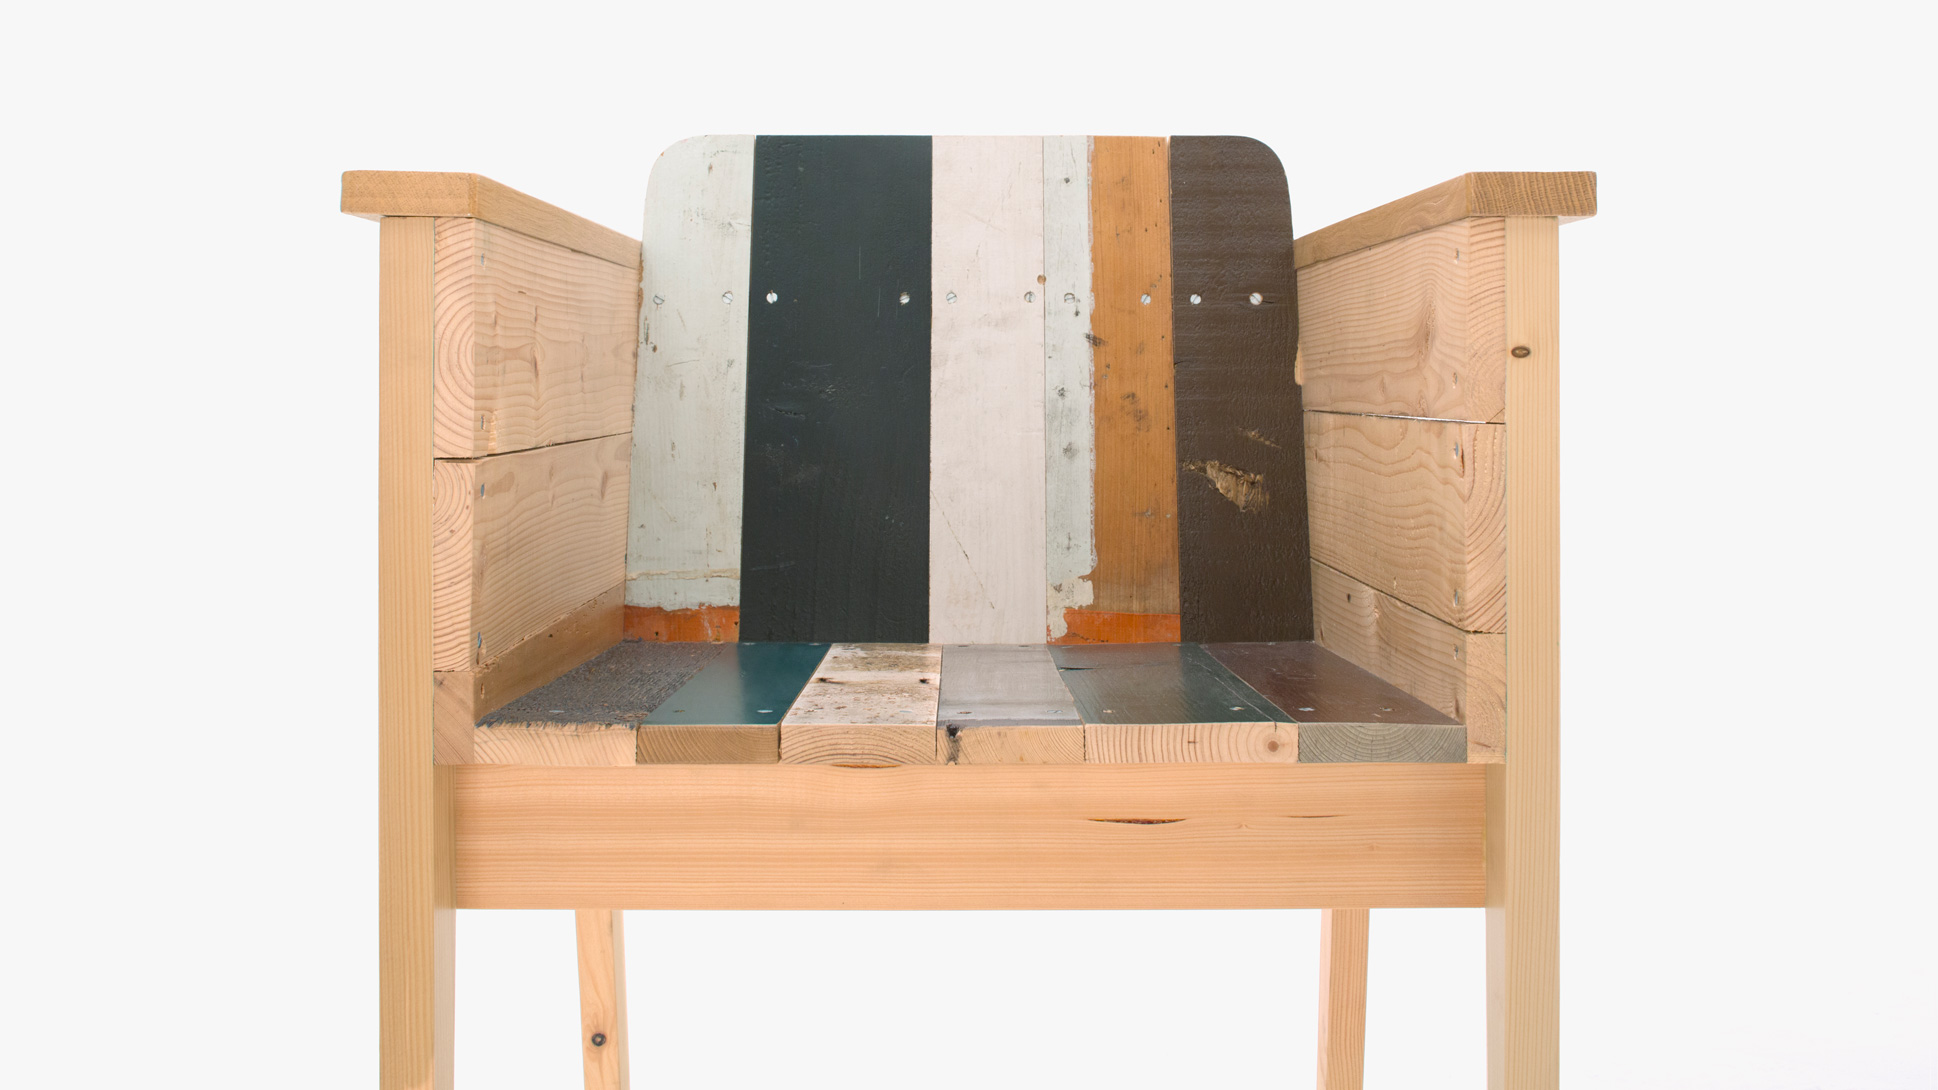 Scrapwood furniture by Piet Hein Eek